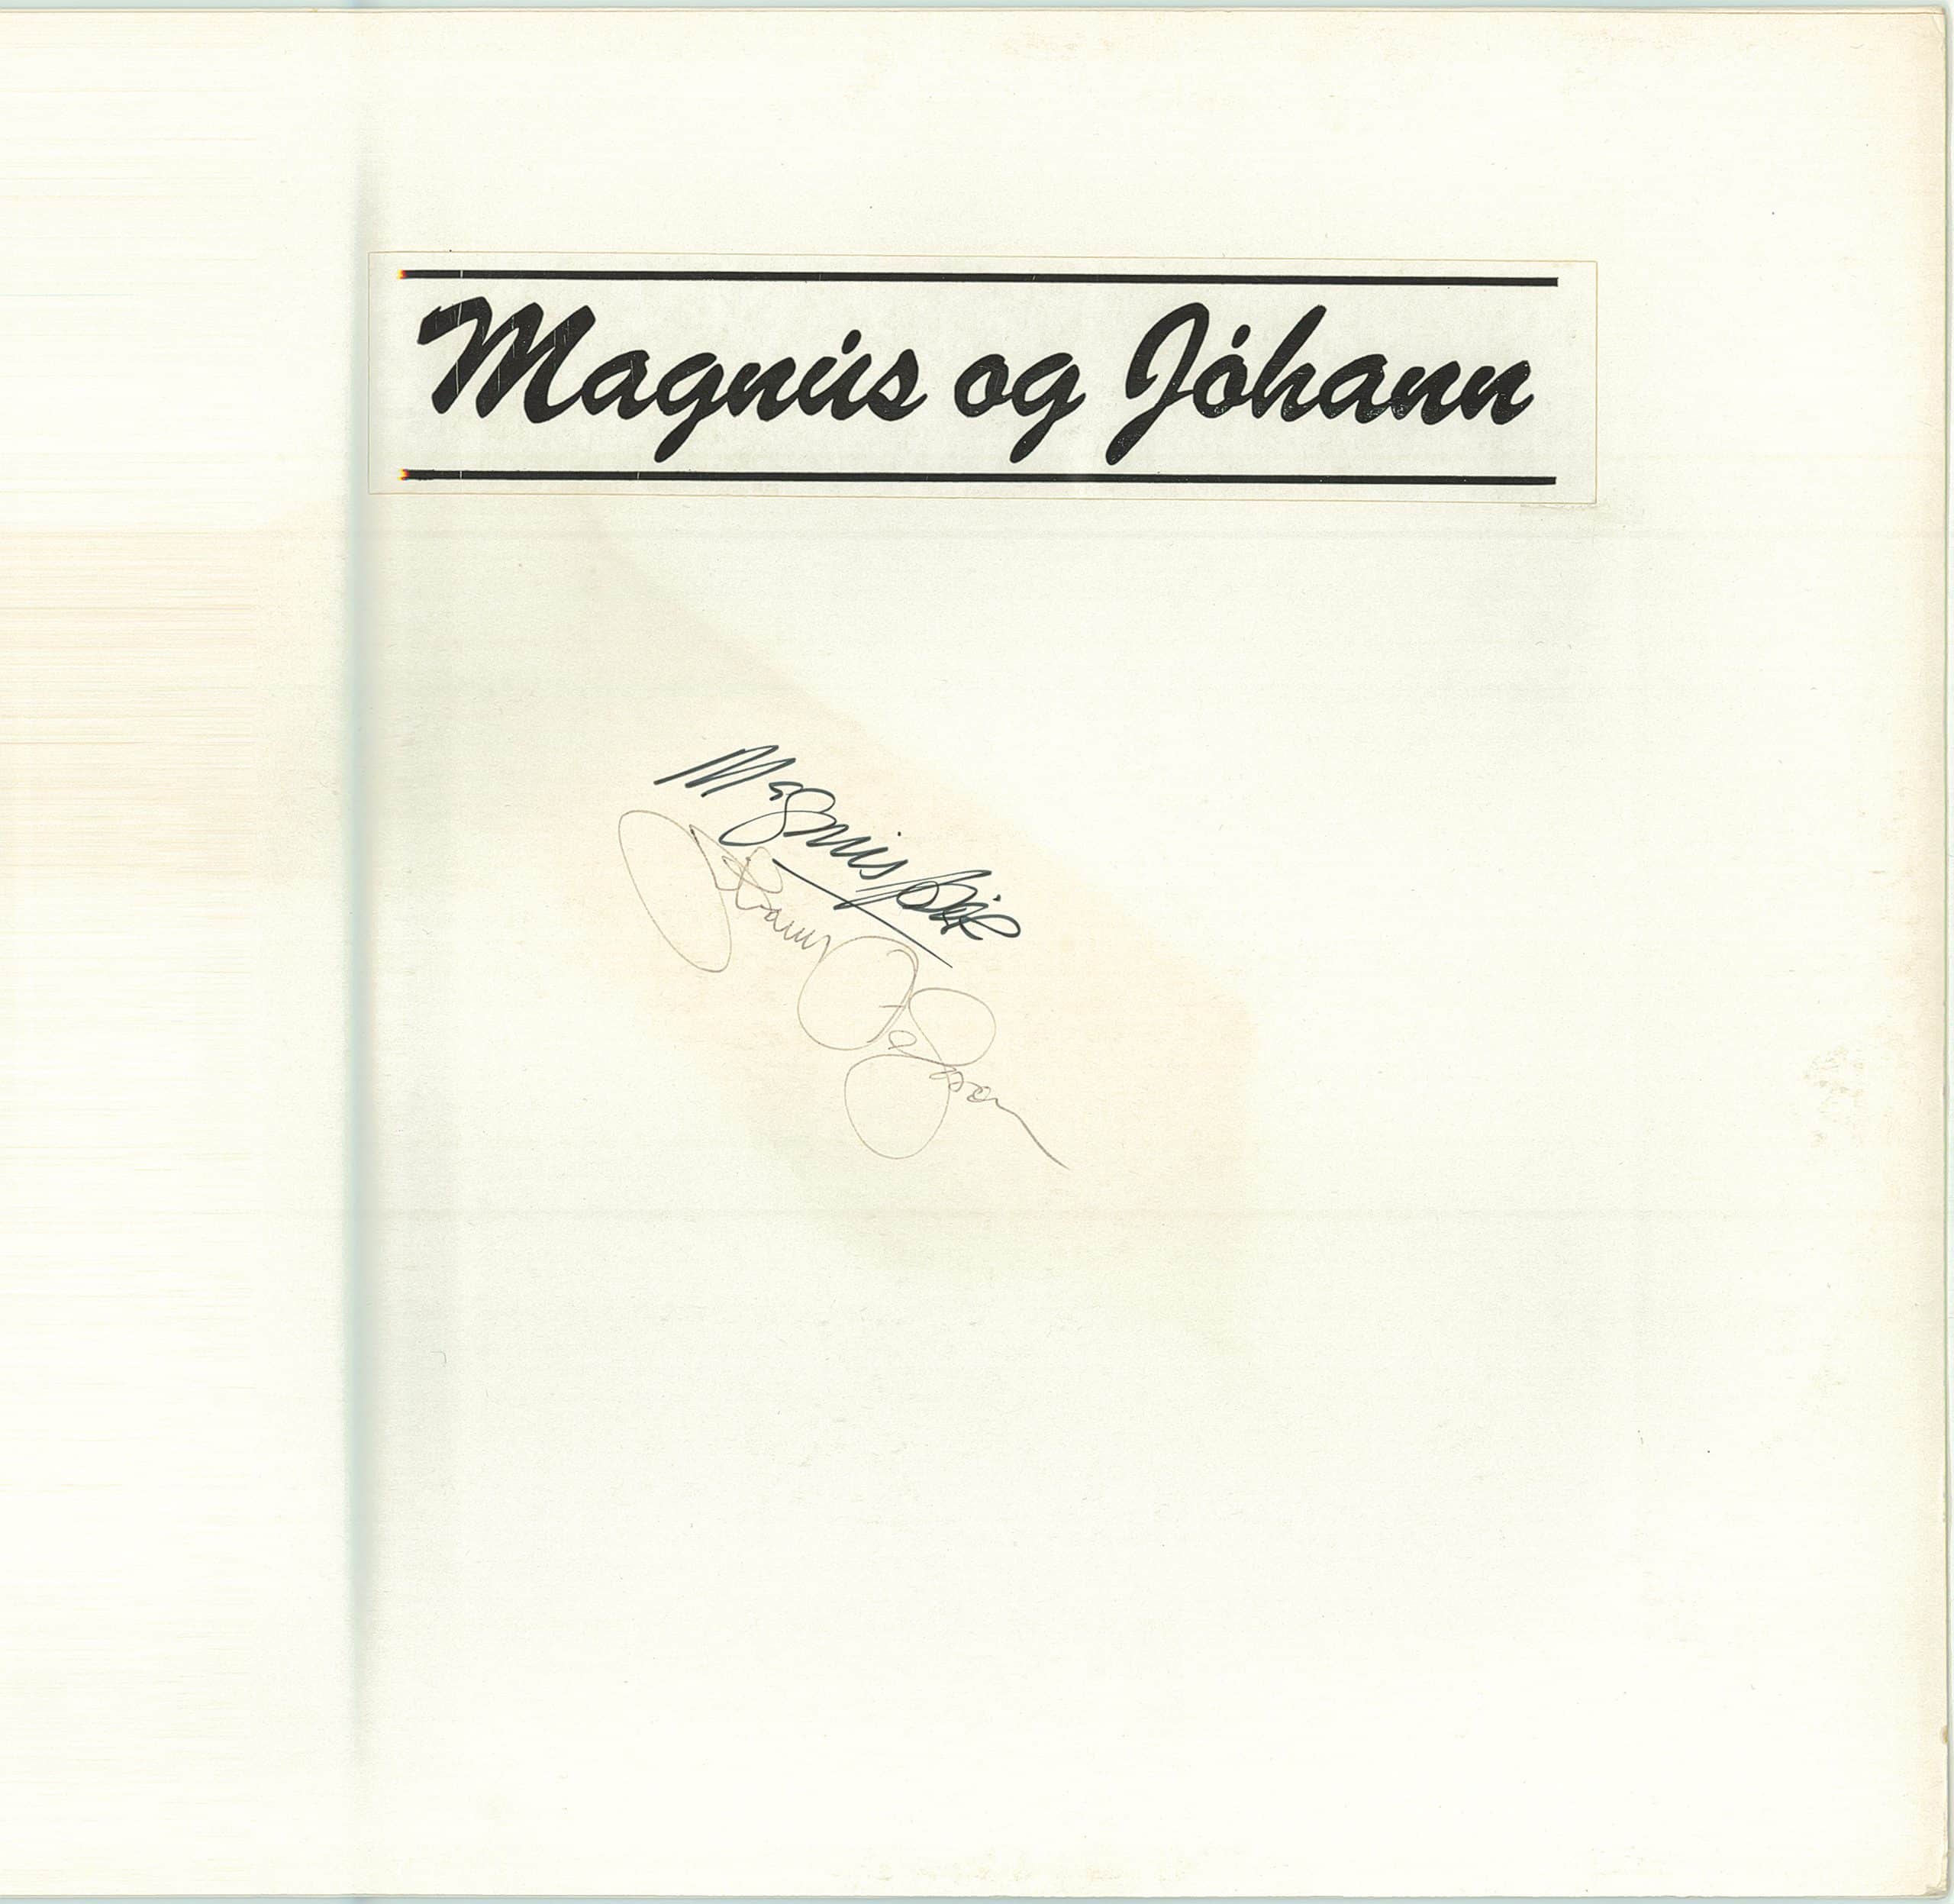 02-magnus-og-johann